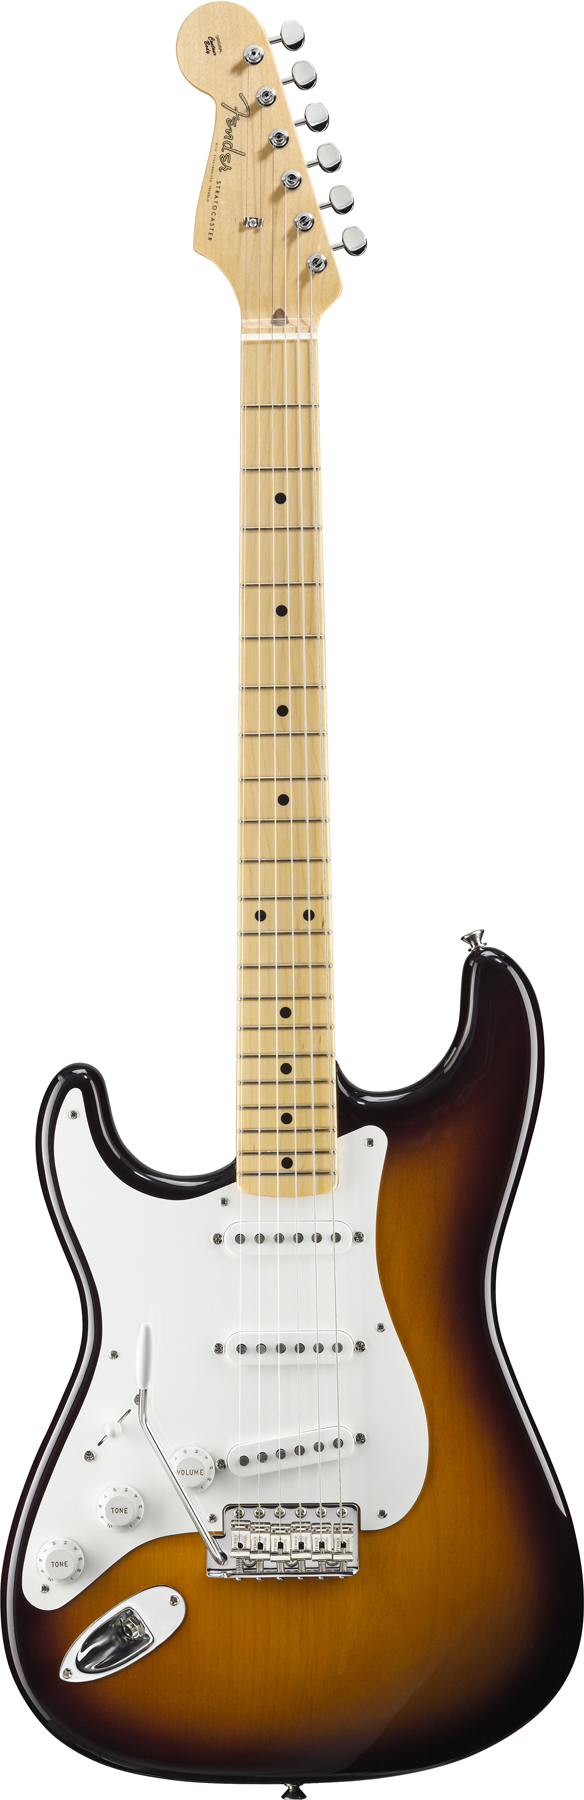 American Vintage 56 Stratocaster Left-Handed